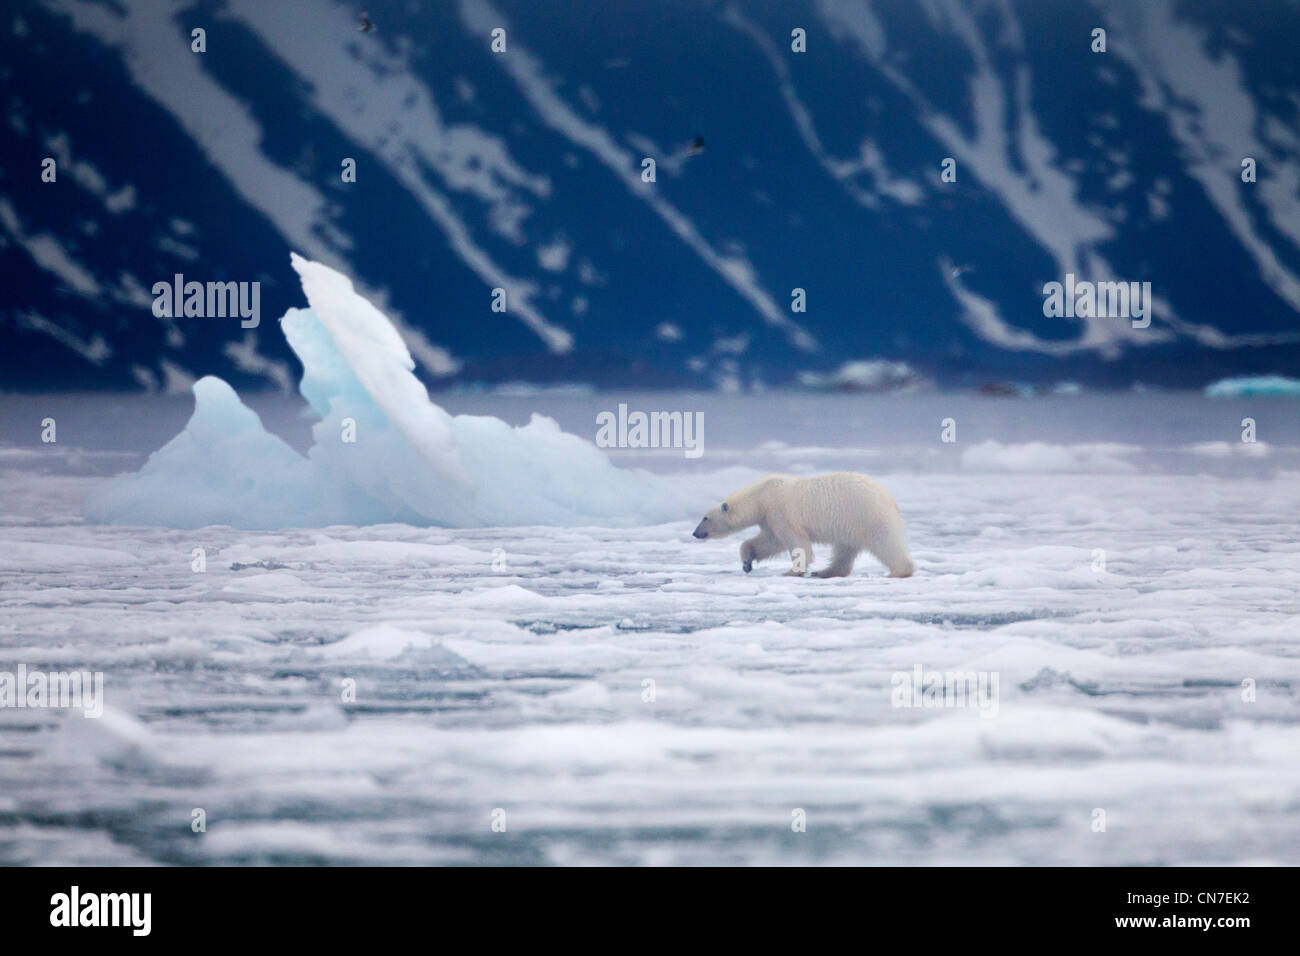 Norvegia Isole Svalbard, isola Spitsbergen, orso polare (Ursus maritimus) passeggiate attraverso le padelle della fusione del ghiaccio marino Foto Stock